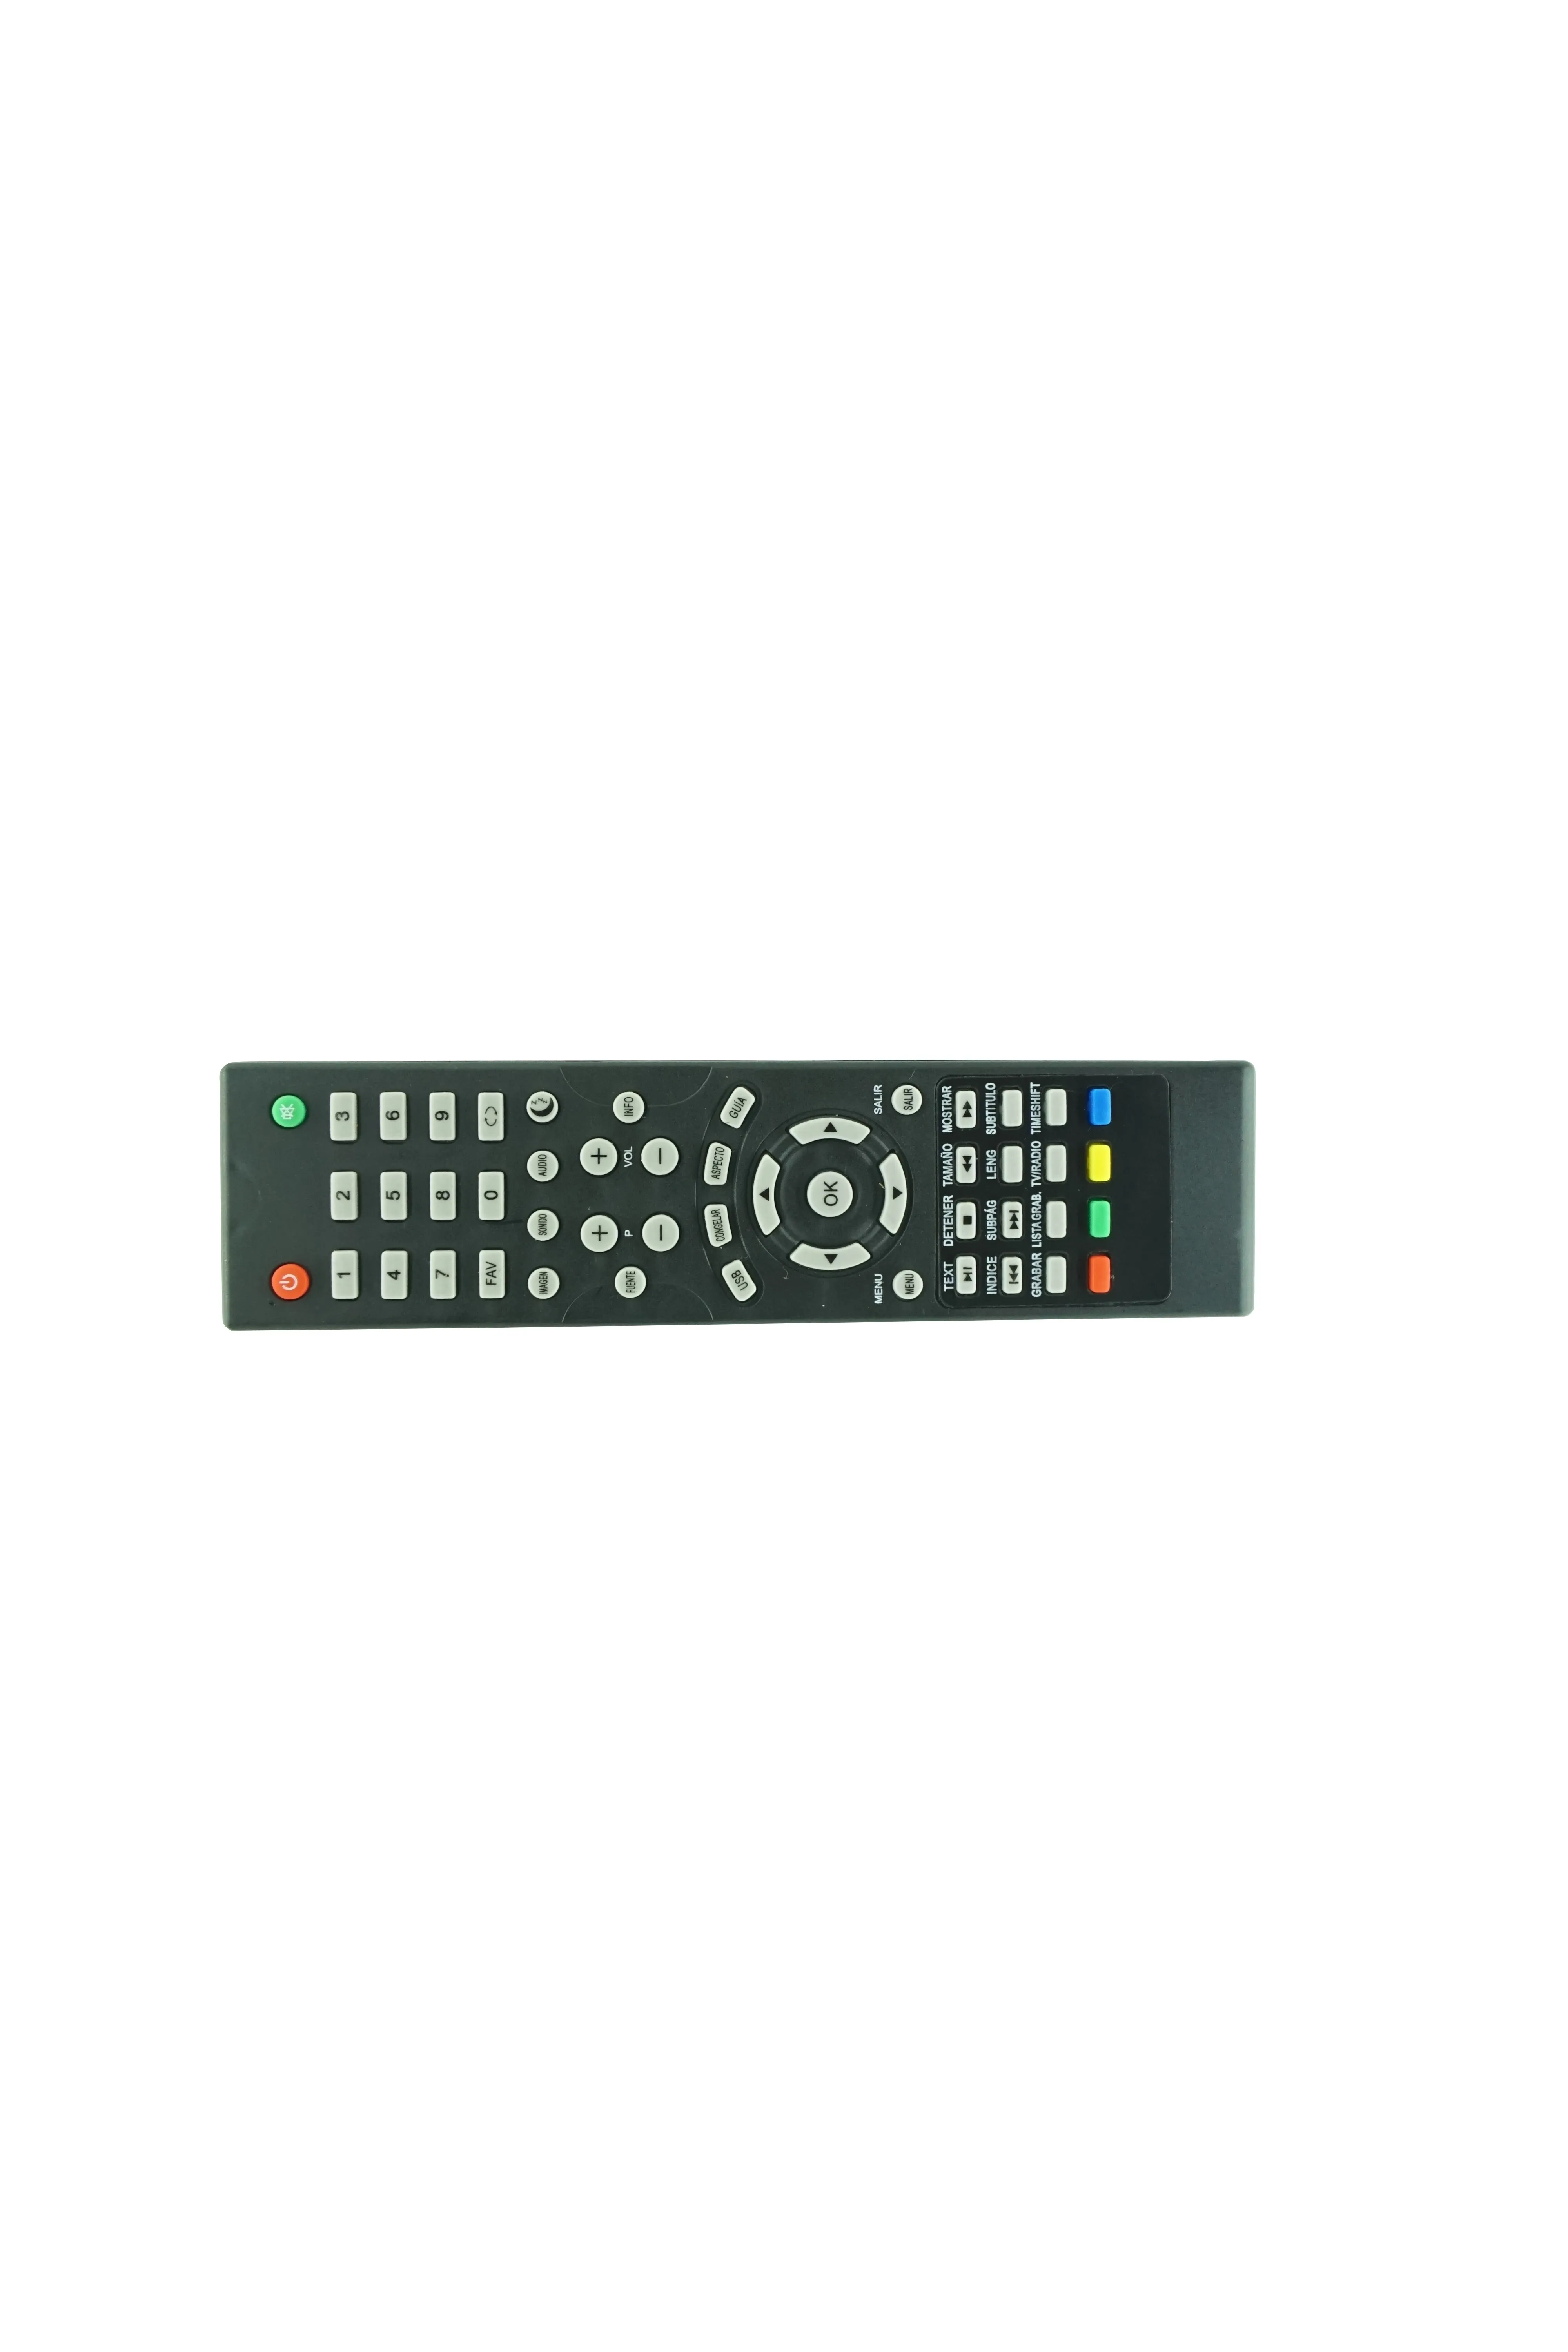 Controle remoto para Harper 22F470T 24R471T 28R470T 28R661T 32R470T 32R471T 50F470T 55F470T 50F470TS 22F490T SMART LCD LED HDTV TV